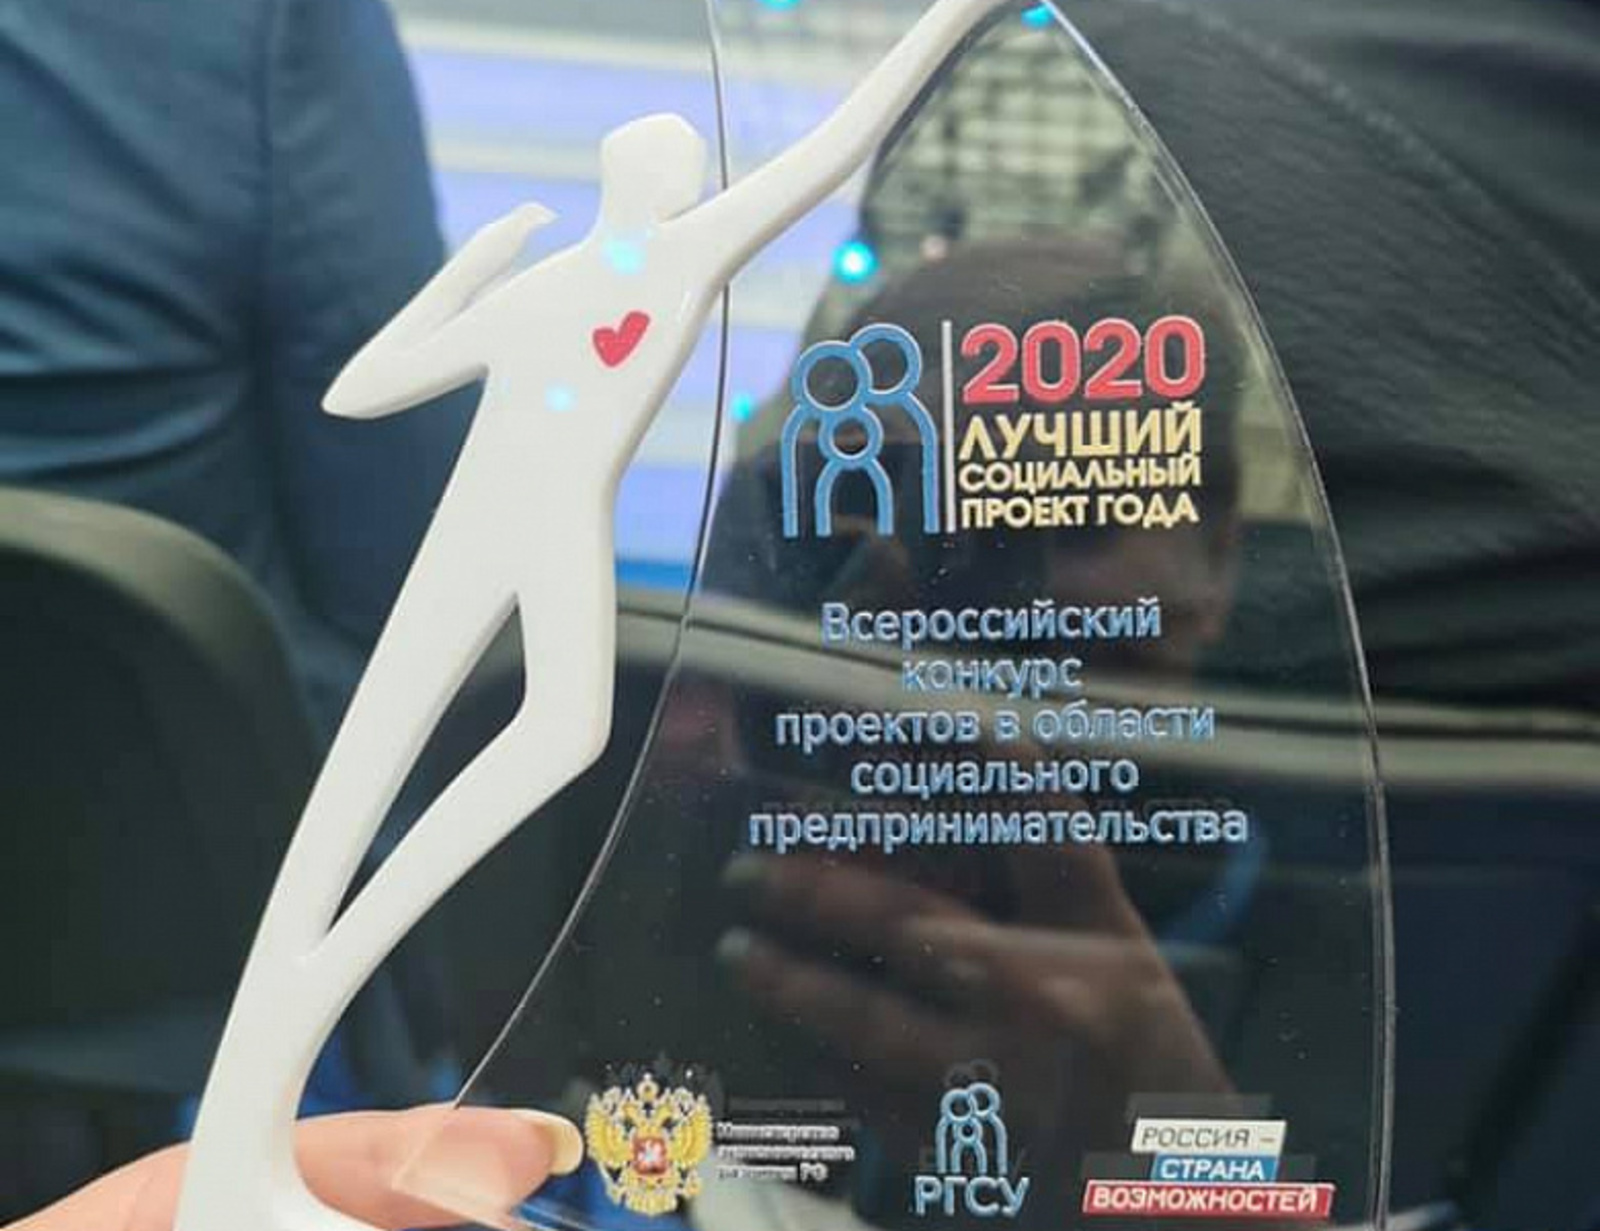 Проекты предпринимателей Башкортостана стали лауреатами Всероссийского конкурса «Лучший социальный проект года»